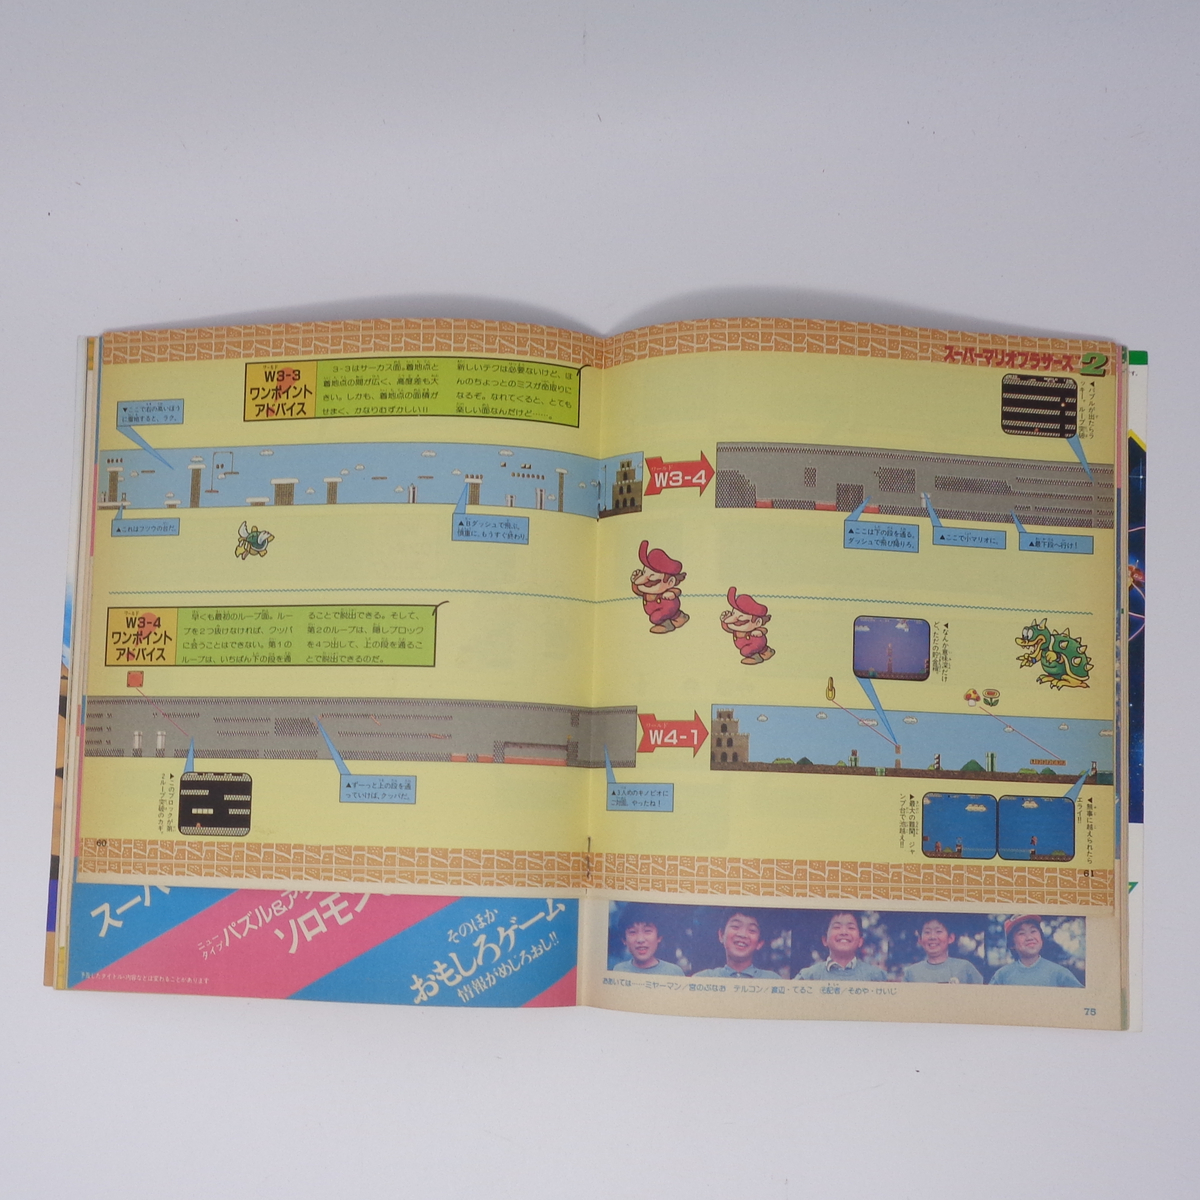 マルカツ ファミコン 1986年7月11日号VOL.4 付録シール未使用/ドラゴンクエスト/スーパーマリオブラザーズ2/ゲーム雑誌[Free Shipping]_画像8